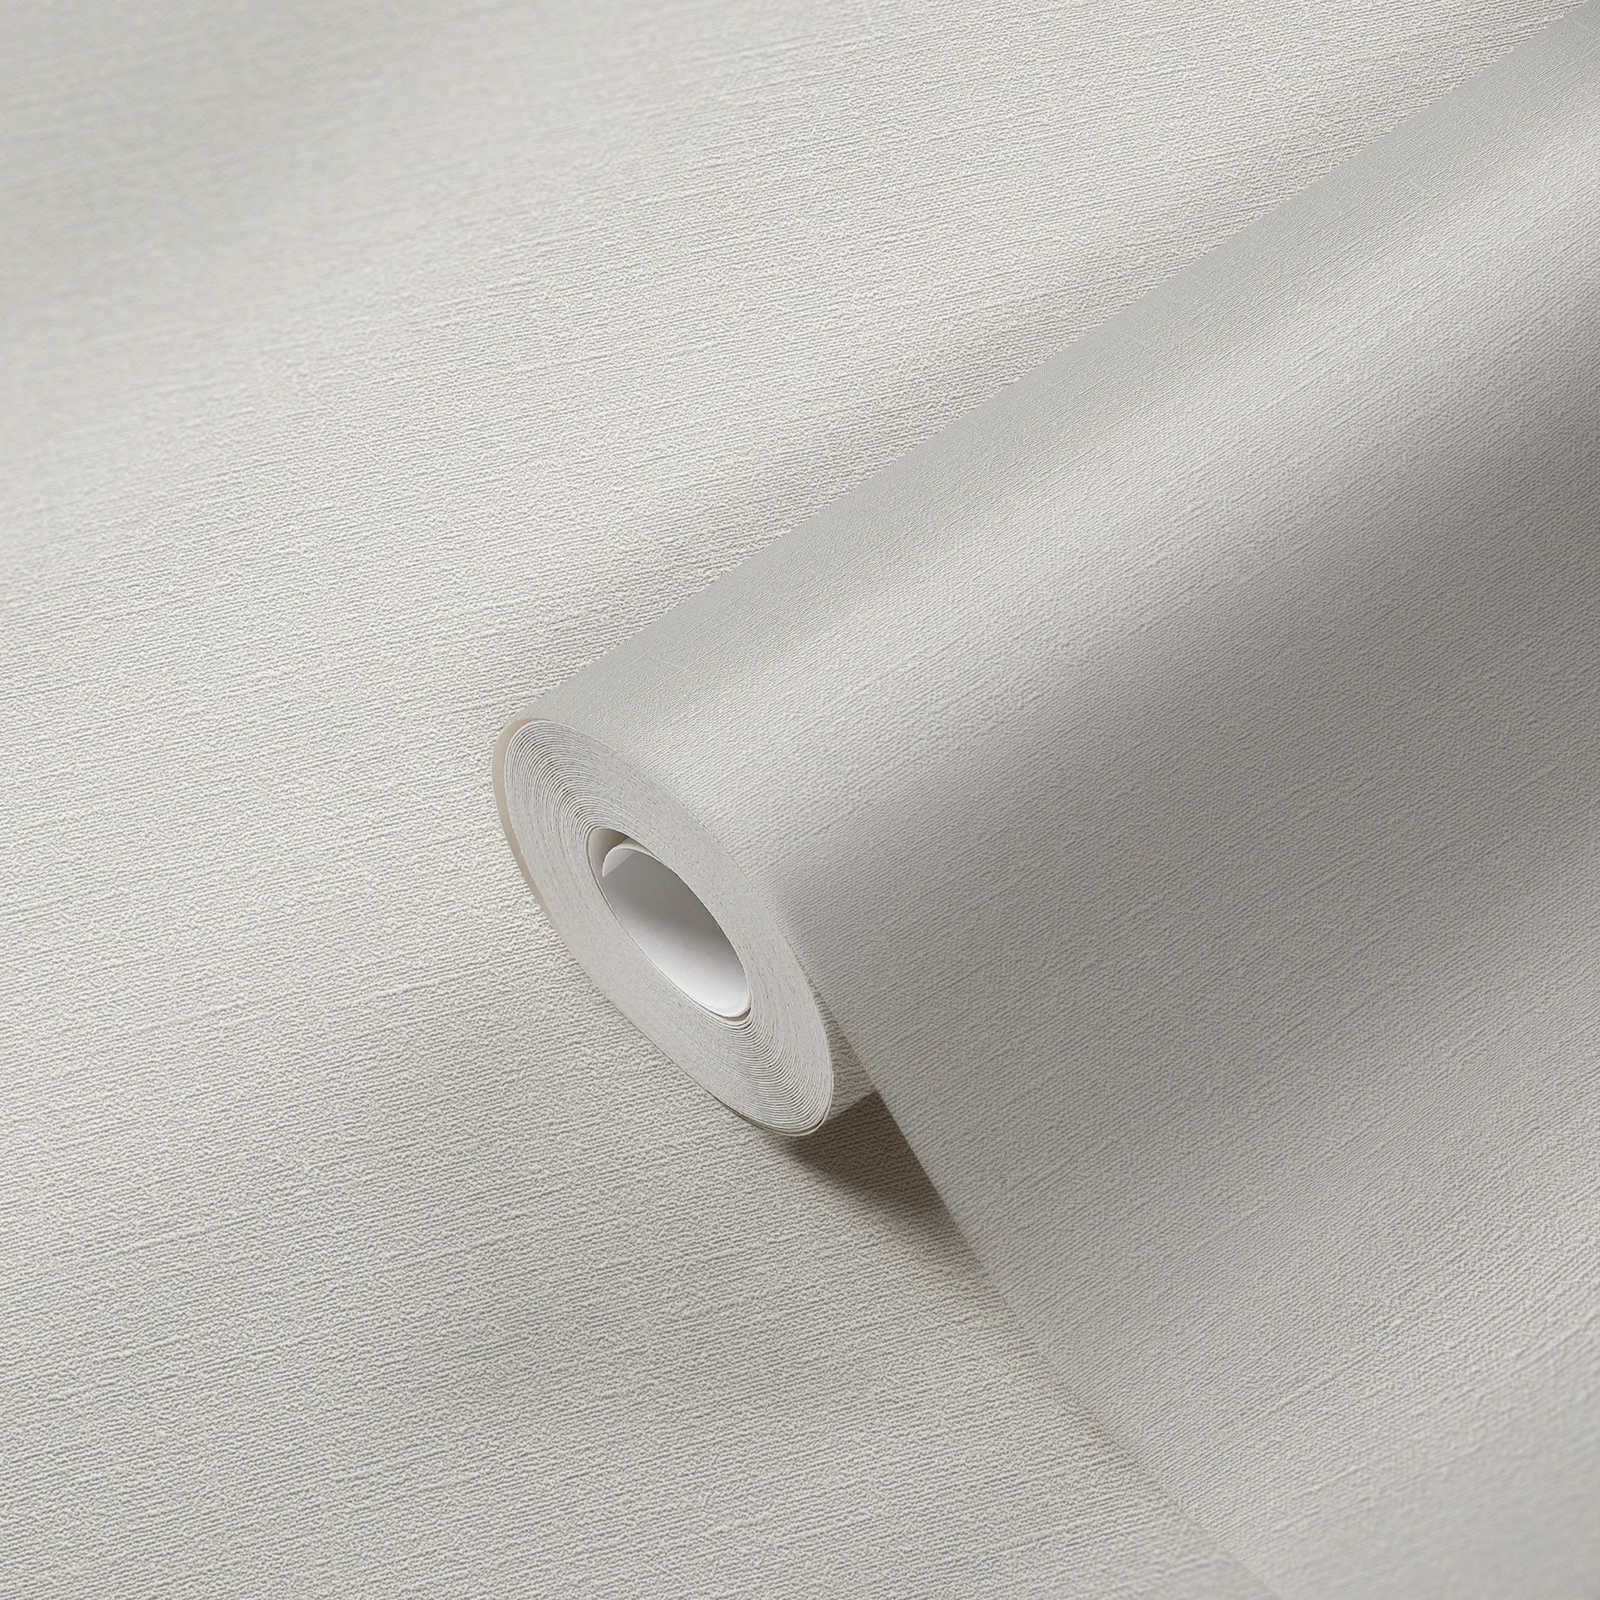             Fine textured wallpaper PVC-free - grey, white
        